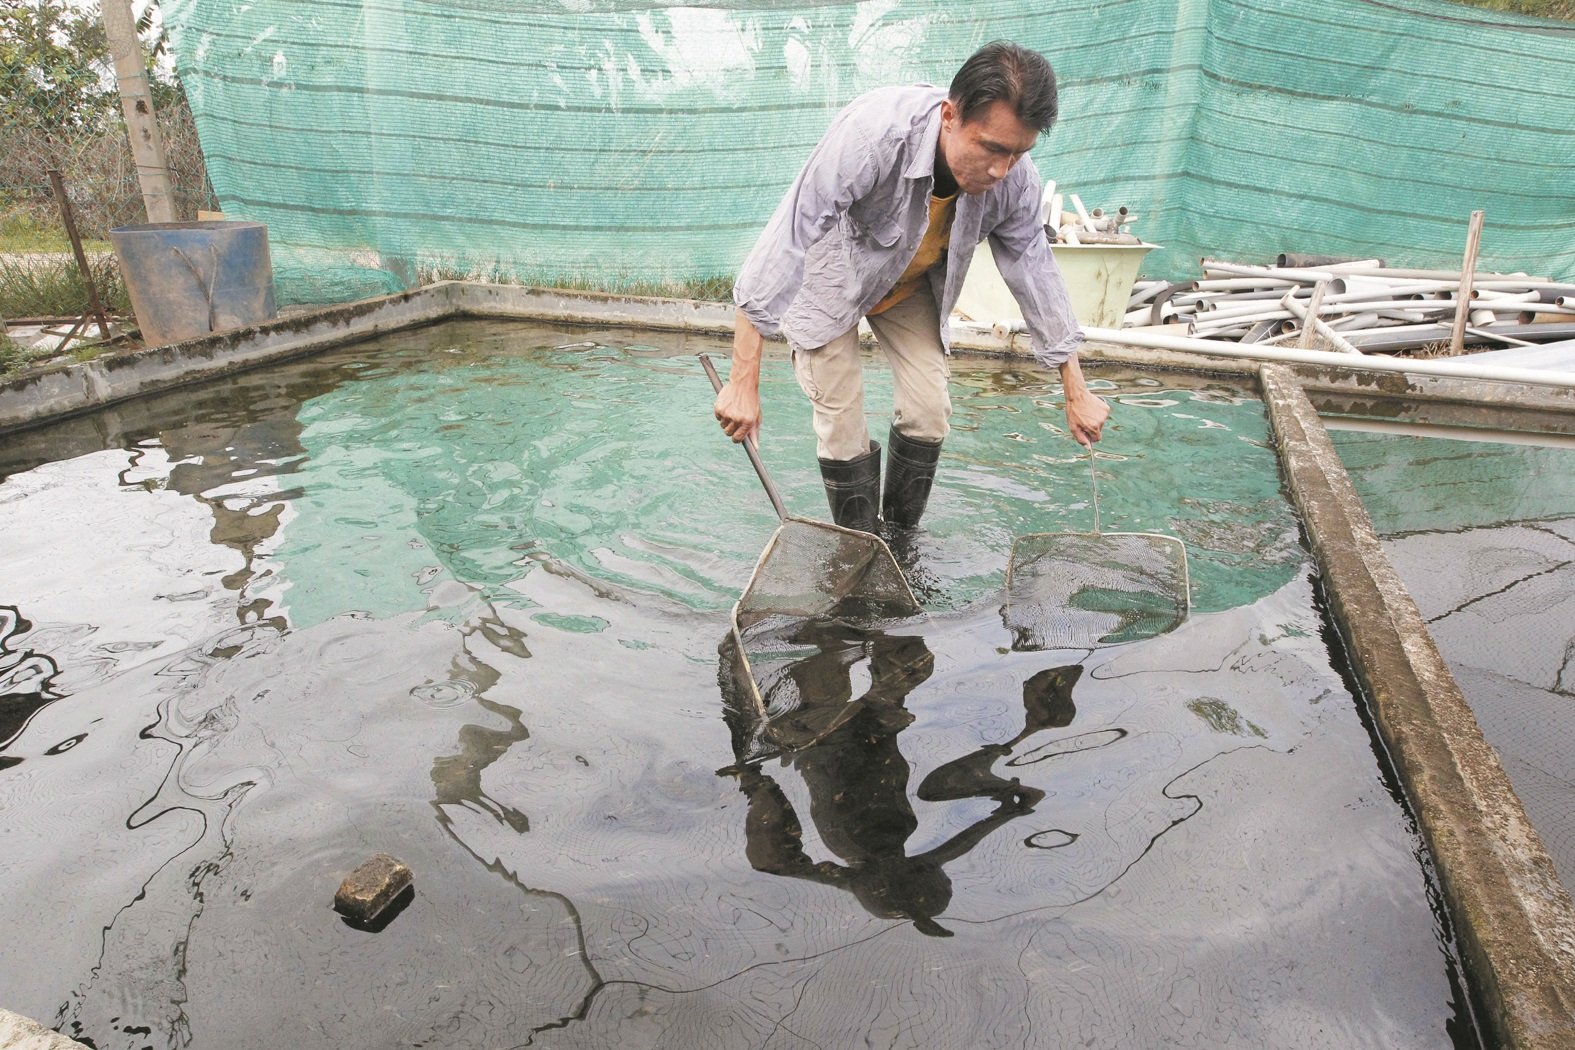 锺伟雄每天都会在渔场观察神仙鱼的状况， 以确保池内的鱼并无受病菌感染。